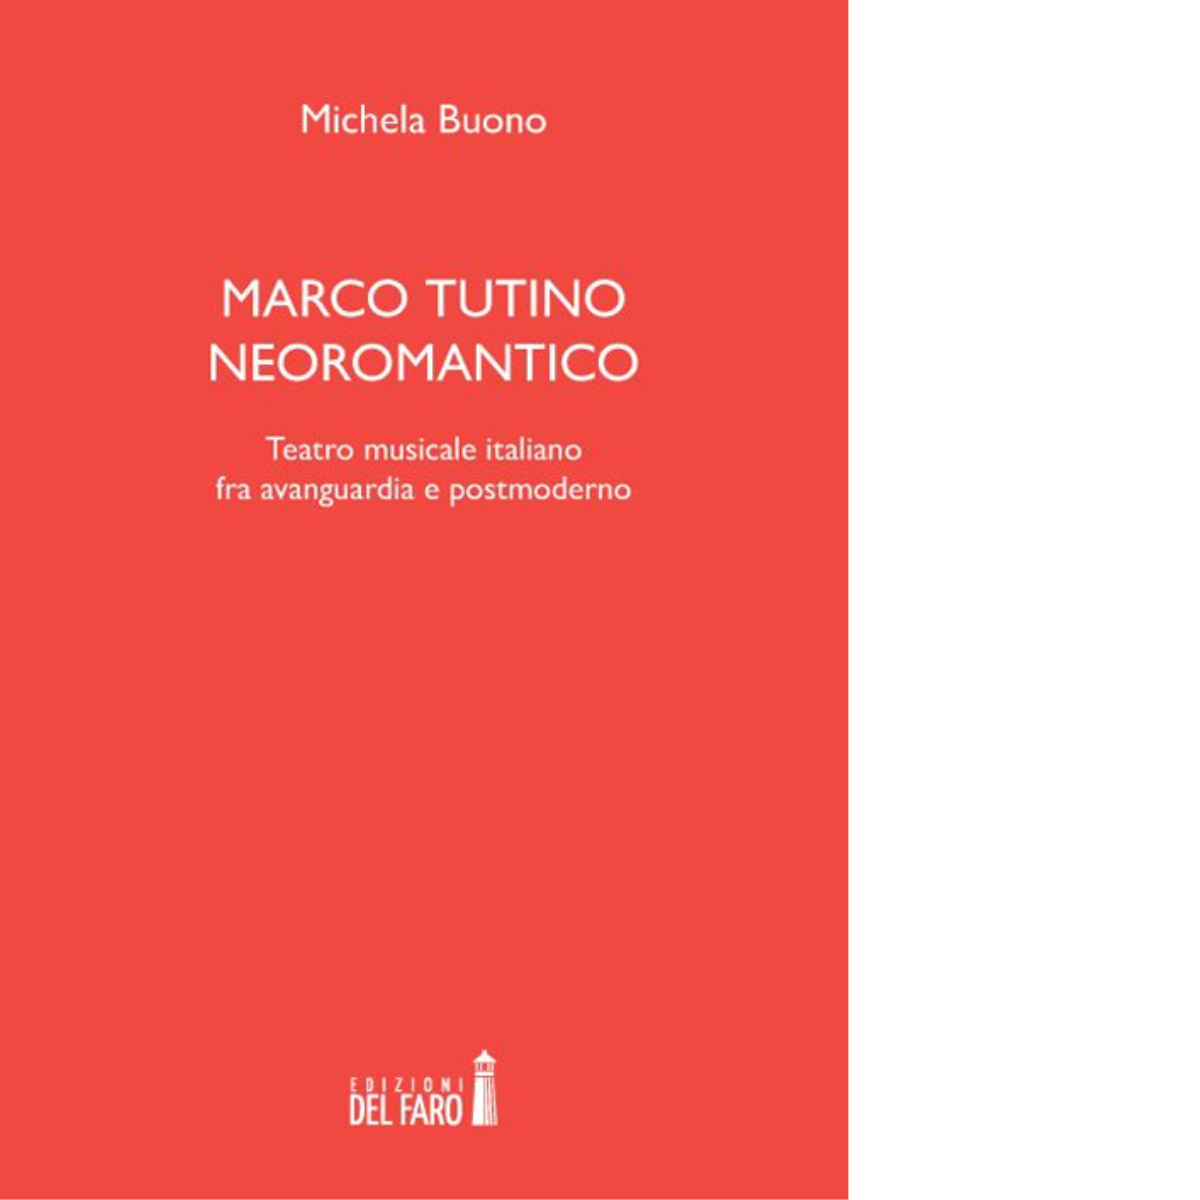 Marco Tutino neoromantico di Buono Michela - Edizioni Del faro, 2014 libro usato